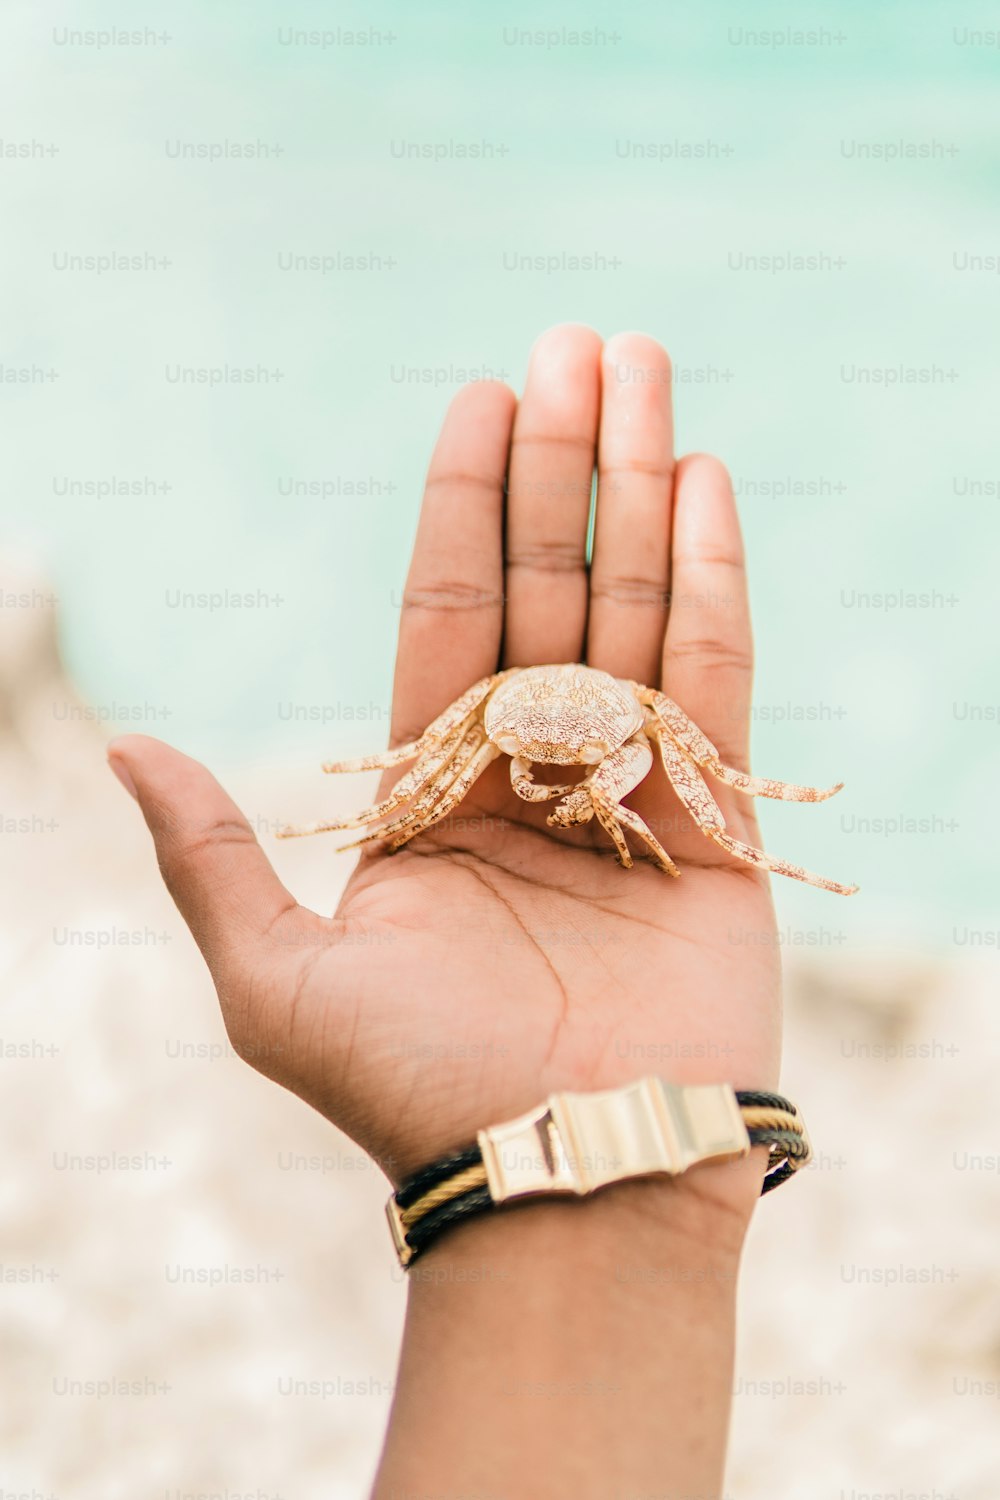 eine Person, die eine kleine Krabbe in der Hand hält